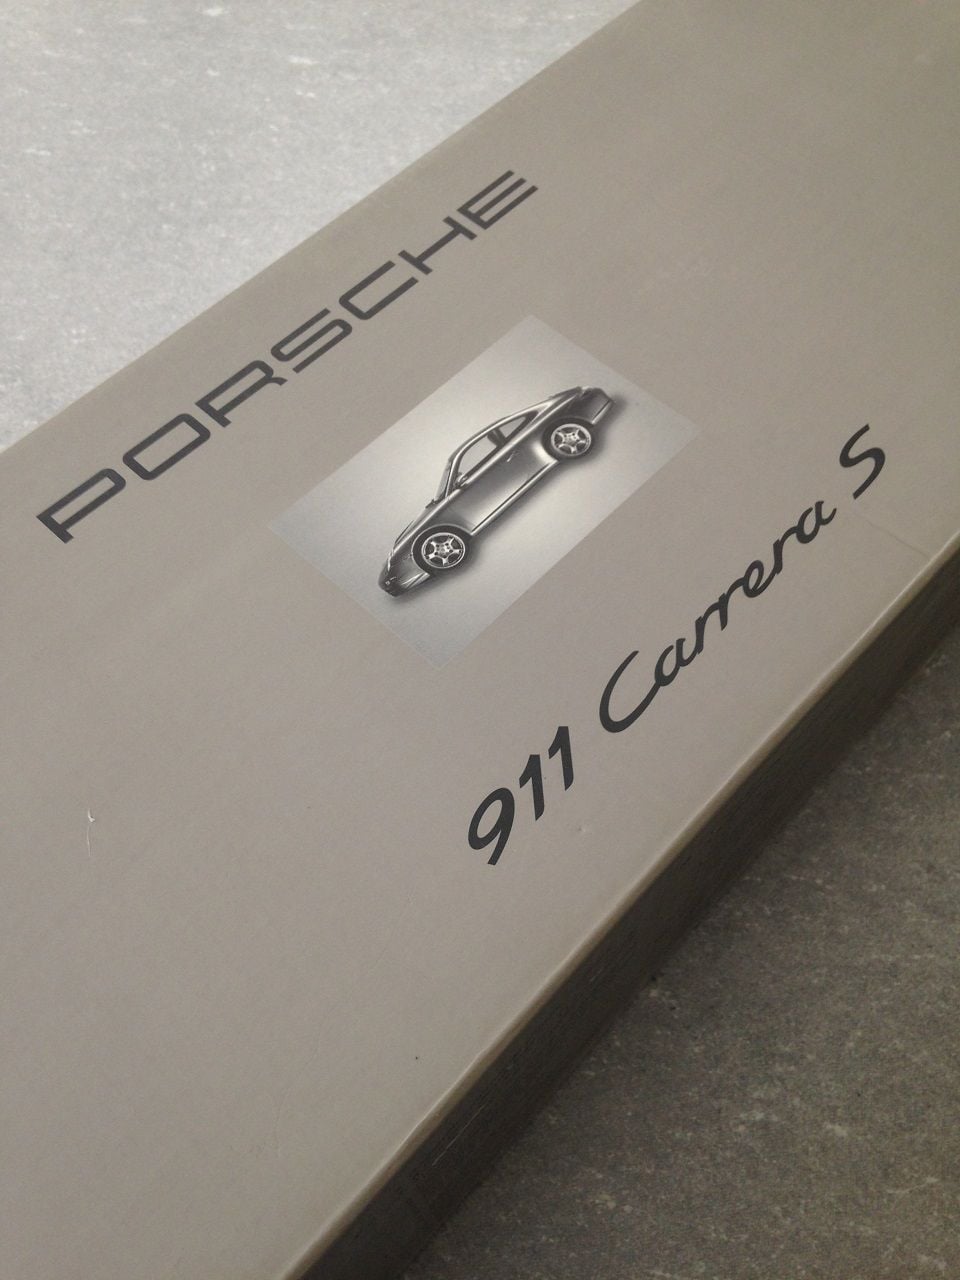 Miscellaneous - Genuine Porsche Radio Controlled 911 Carrera S (997), Brand New, NLA - New - 2005 to 2012 Porsche Carrera - Austin, TX 78701, United States